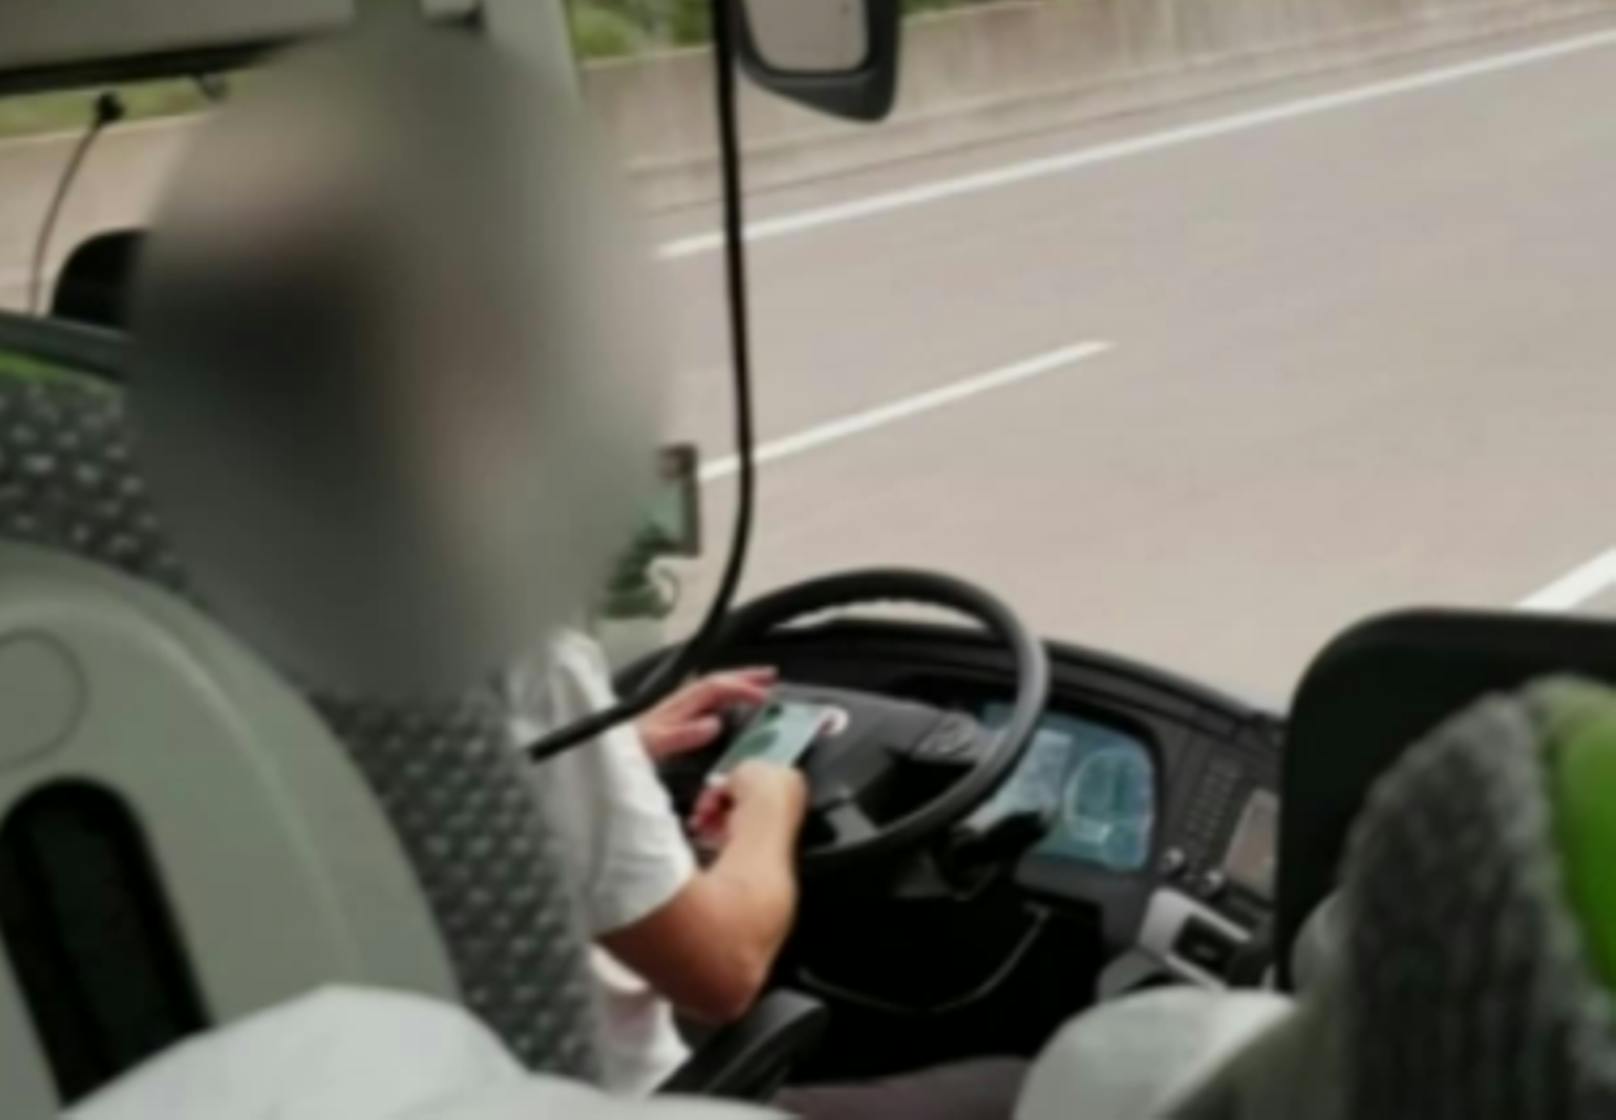 Der Busfahrer soll während der Fahrt Videospiele gespielt haben.